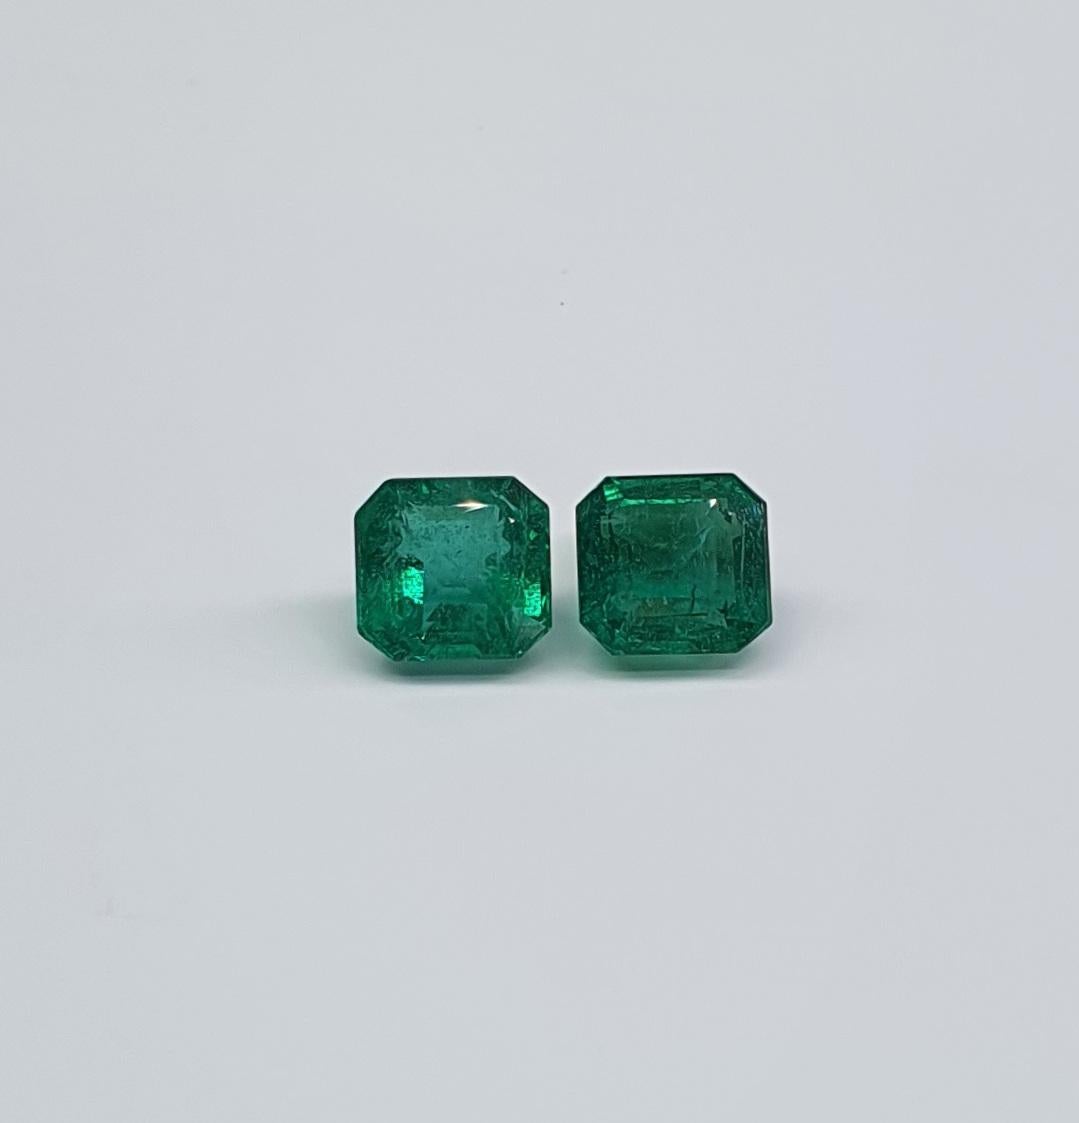 Wunderschönes 6,09 ct Smaragd-Paar, Herkunft Sambia.
Quadratischer Smaragd-Schliff.
Das könnte eine gute Entscheidung für die beiden sein  von Ohrsteckern oder Anhängern/Ringen.
Ausgezeichnete Farbe mach. Guter Schnitt.
Die Steine haben natürliche